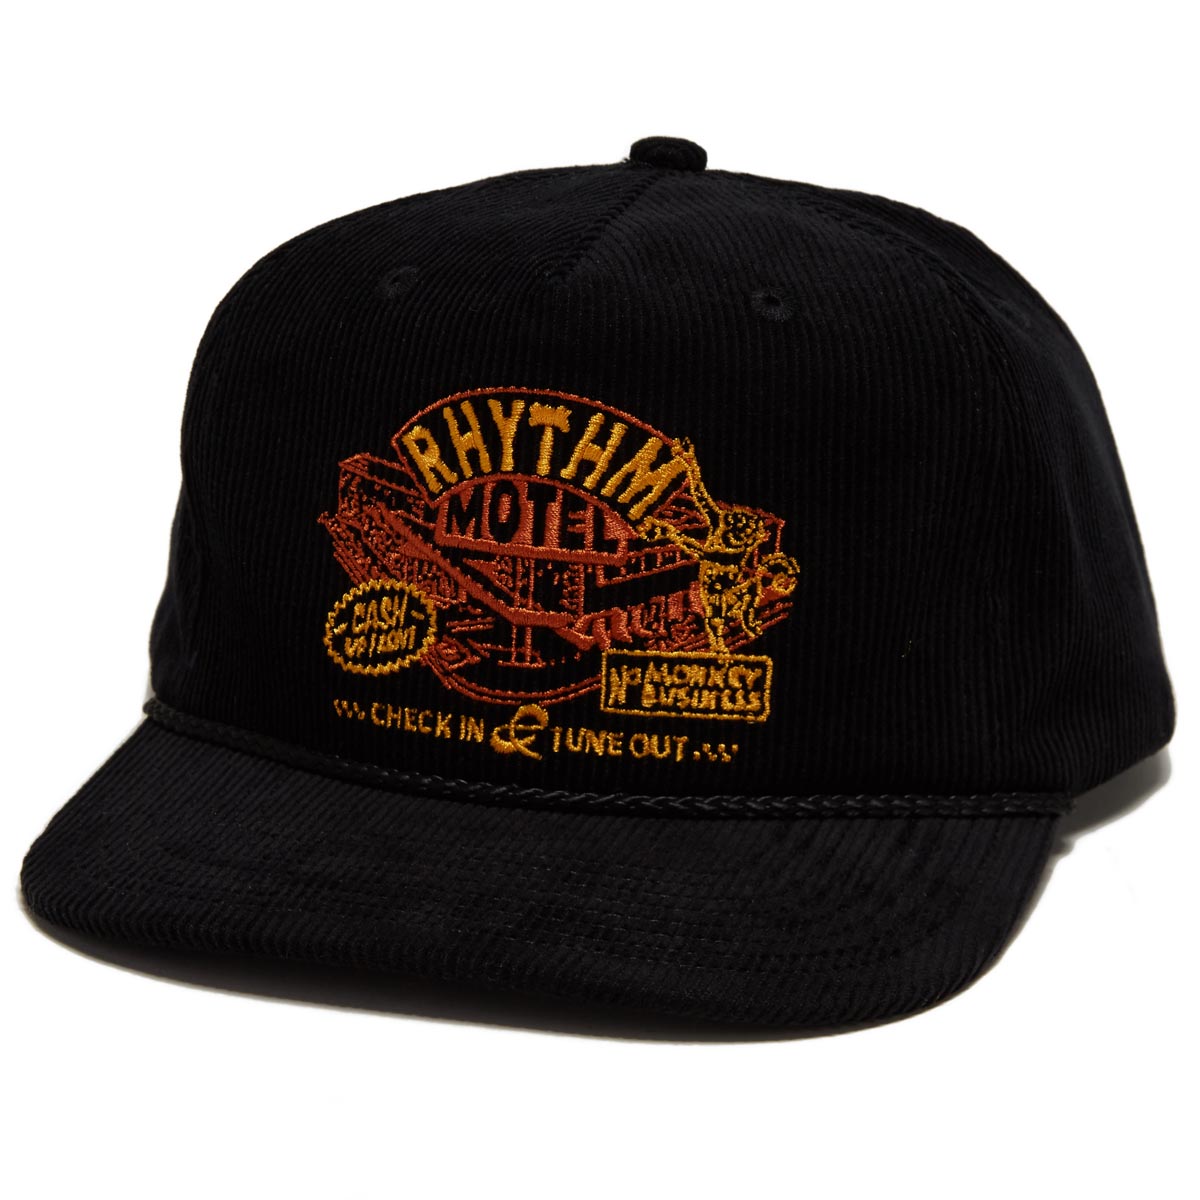 Rhythm Motel Hat - Black image 1